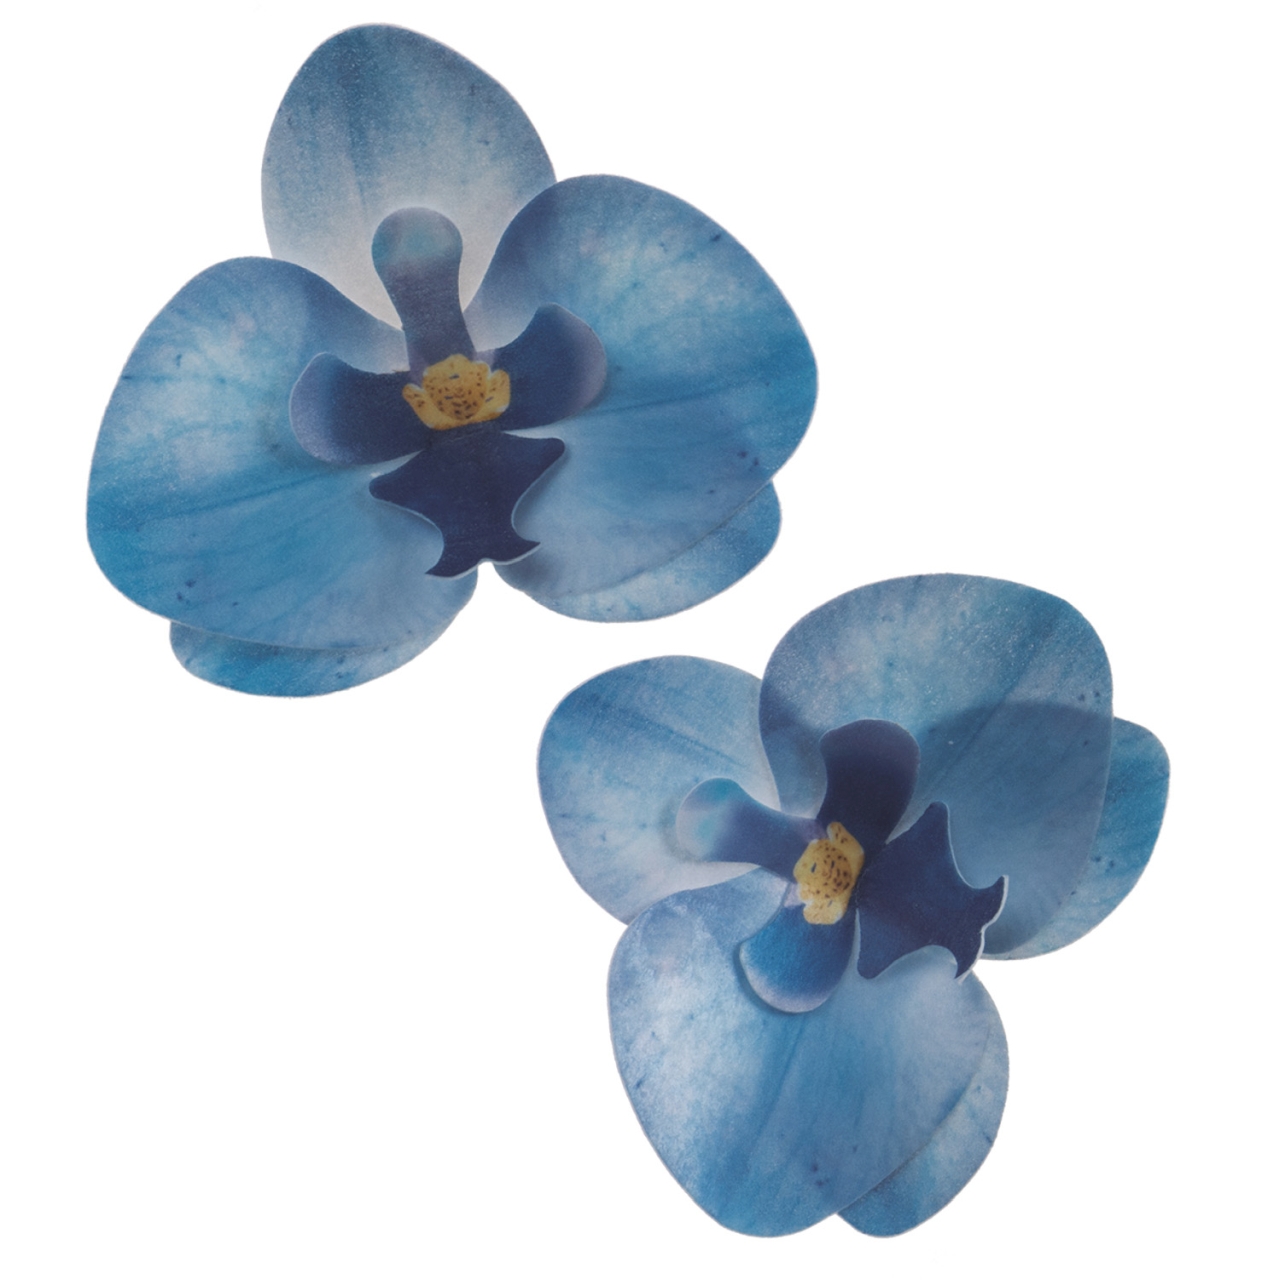 10 x Wafer Orchidee - Blau - 8,5x7,5 cm (Waferdeko / Oblaten Blume) - Dekora